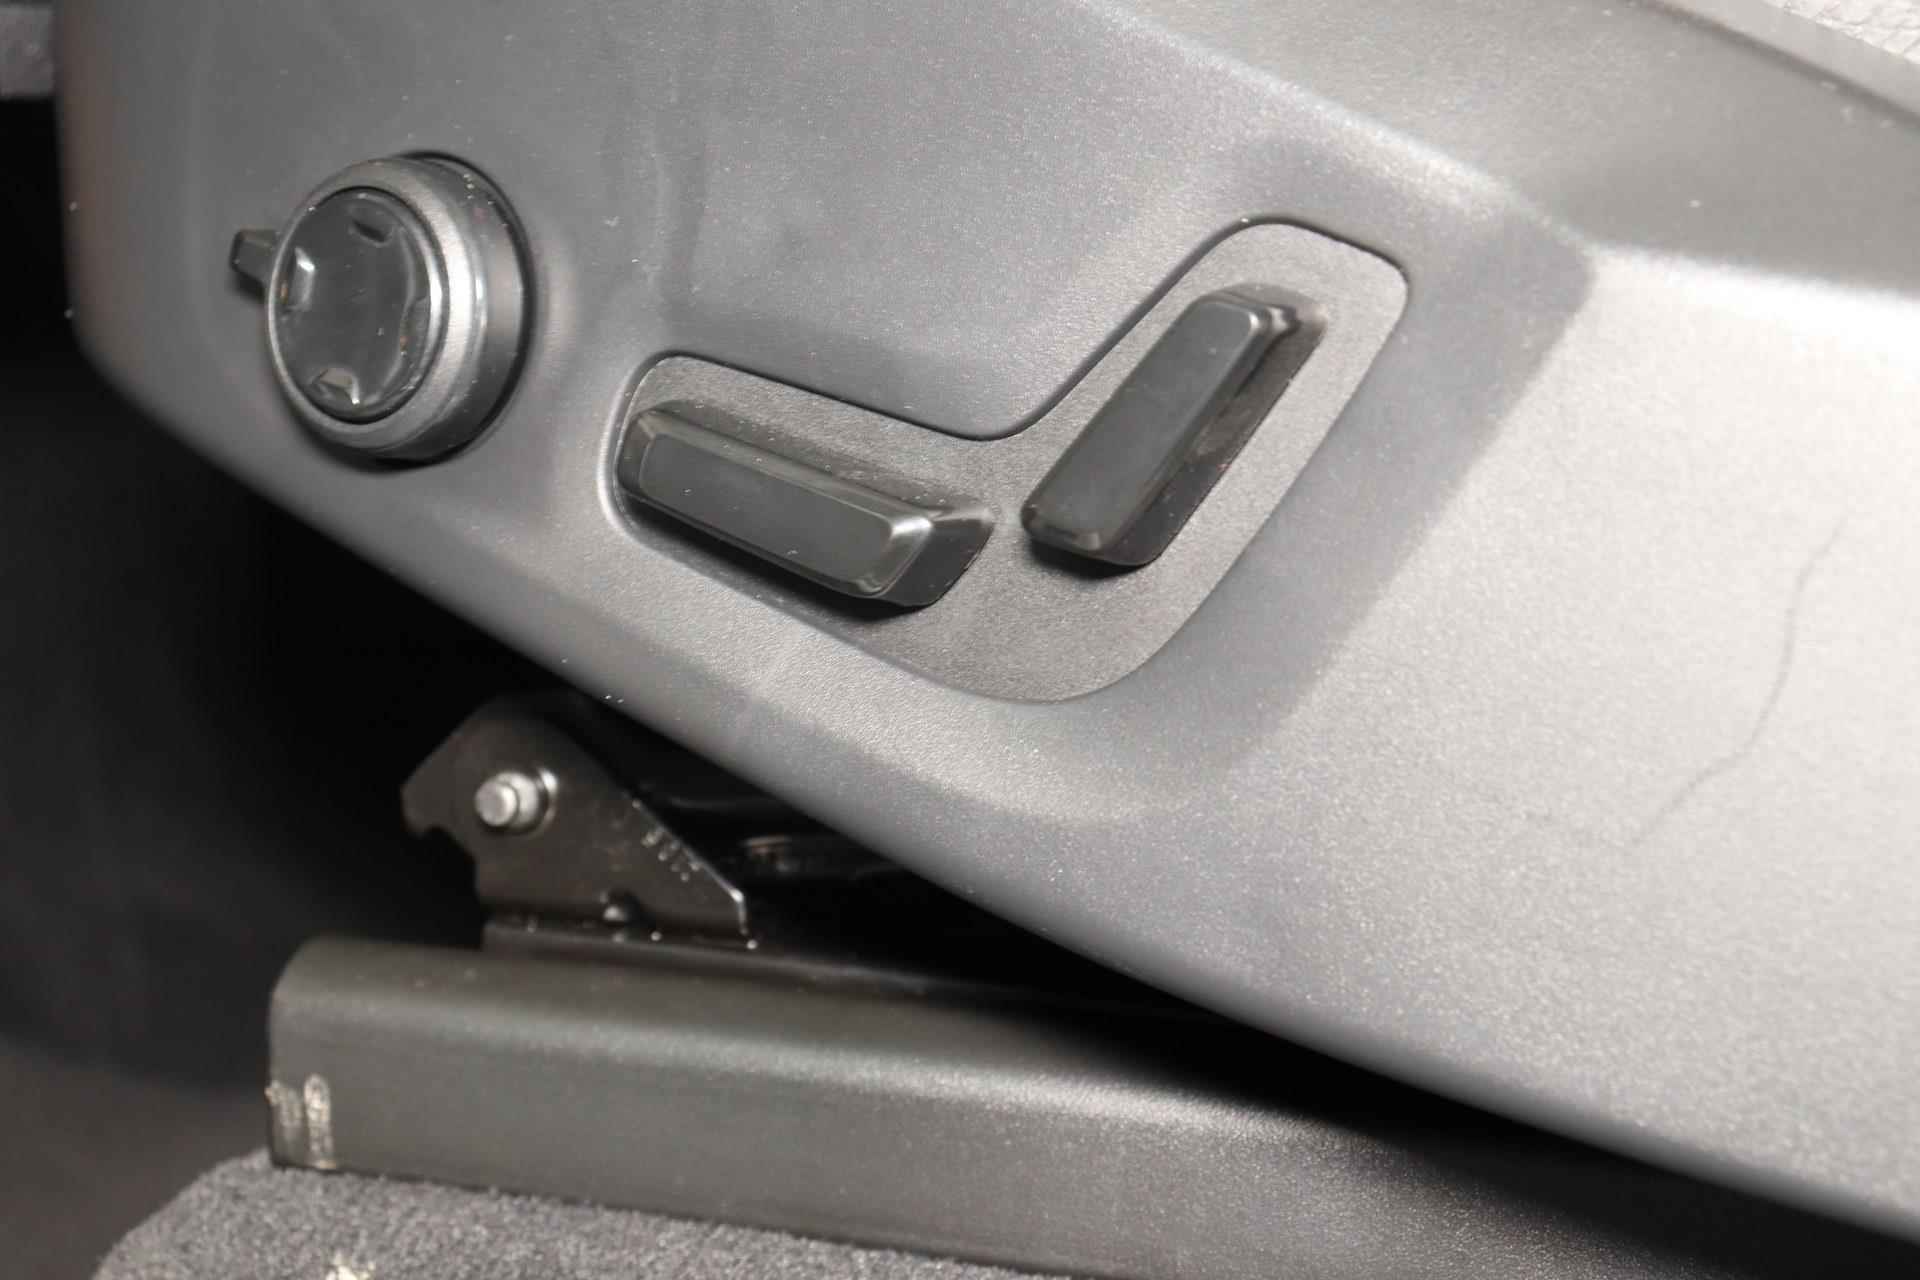 Volvo XC90 T8 Recharge AWD R-Design - IntelliSafe Assist & Surround - Harman/Kardon audio - Adaptieve LED koplampen - Parkeercamera achter - Elektr. bedienb. voorstoelen met geheugen - Climate-Control 4-zone - Apple Carplay & Android Auto - Parkeersensoren voor & achter - Verwarmde voorstoelen & stuur - Draadloze tel. lader - Extra getint glas - 20' LMV - 8/29